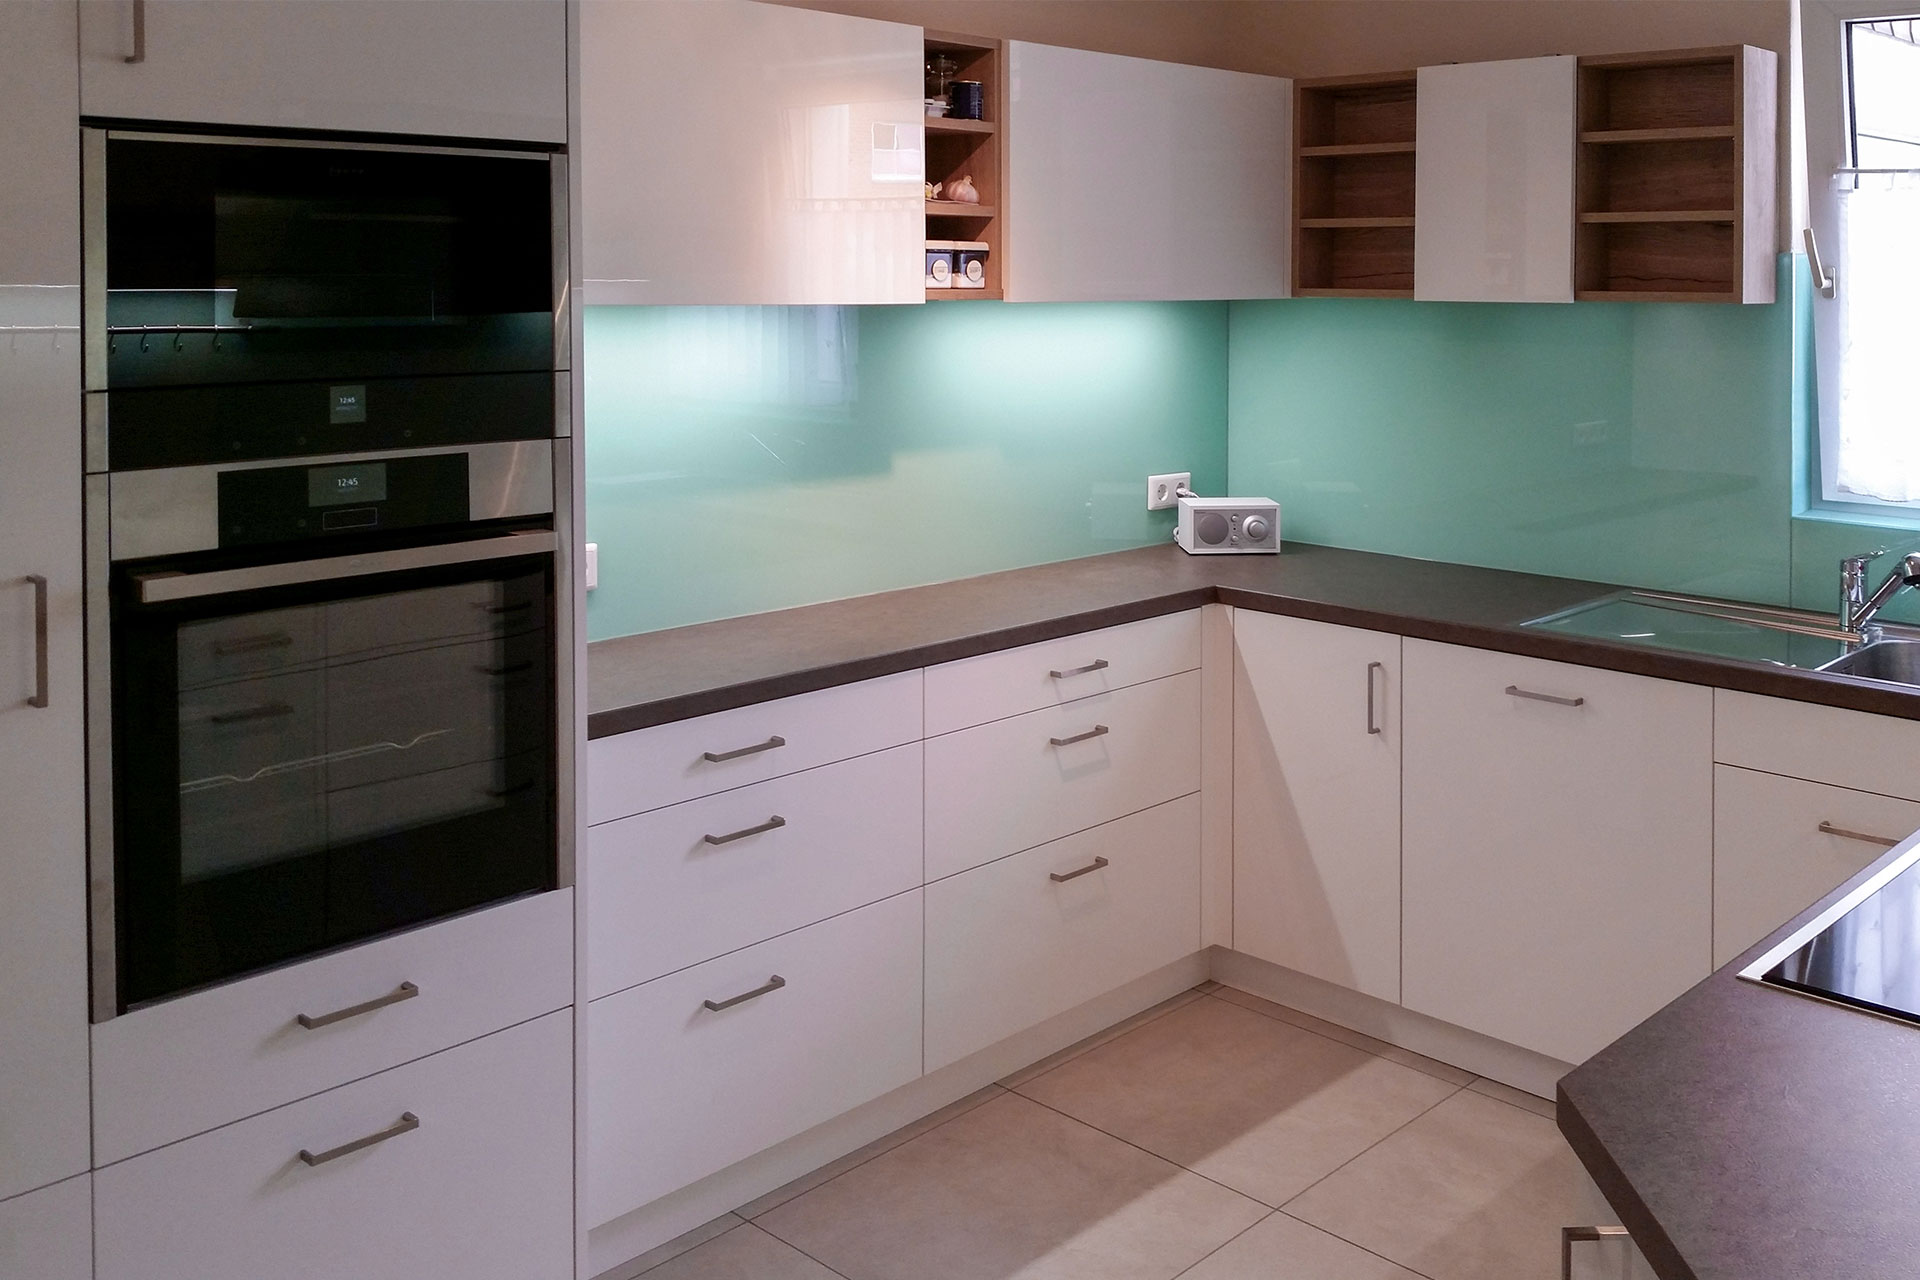 Küche mit Regalelementen für eine luftige Gestaltung und leicht zugänglichen Utensilien, großzügiges Kochfeld, umlaufende Glasrückwand